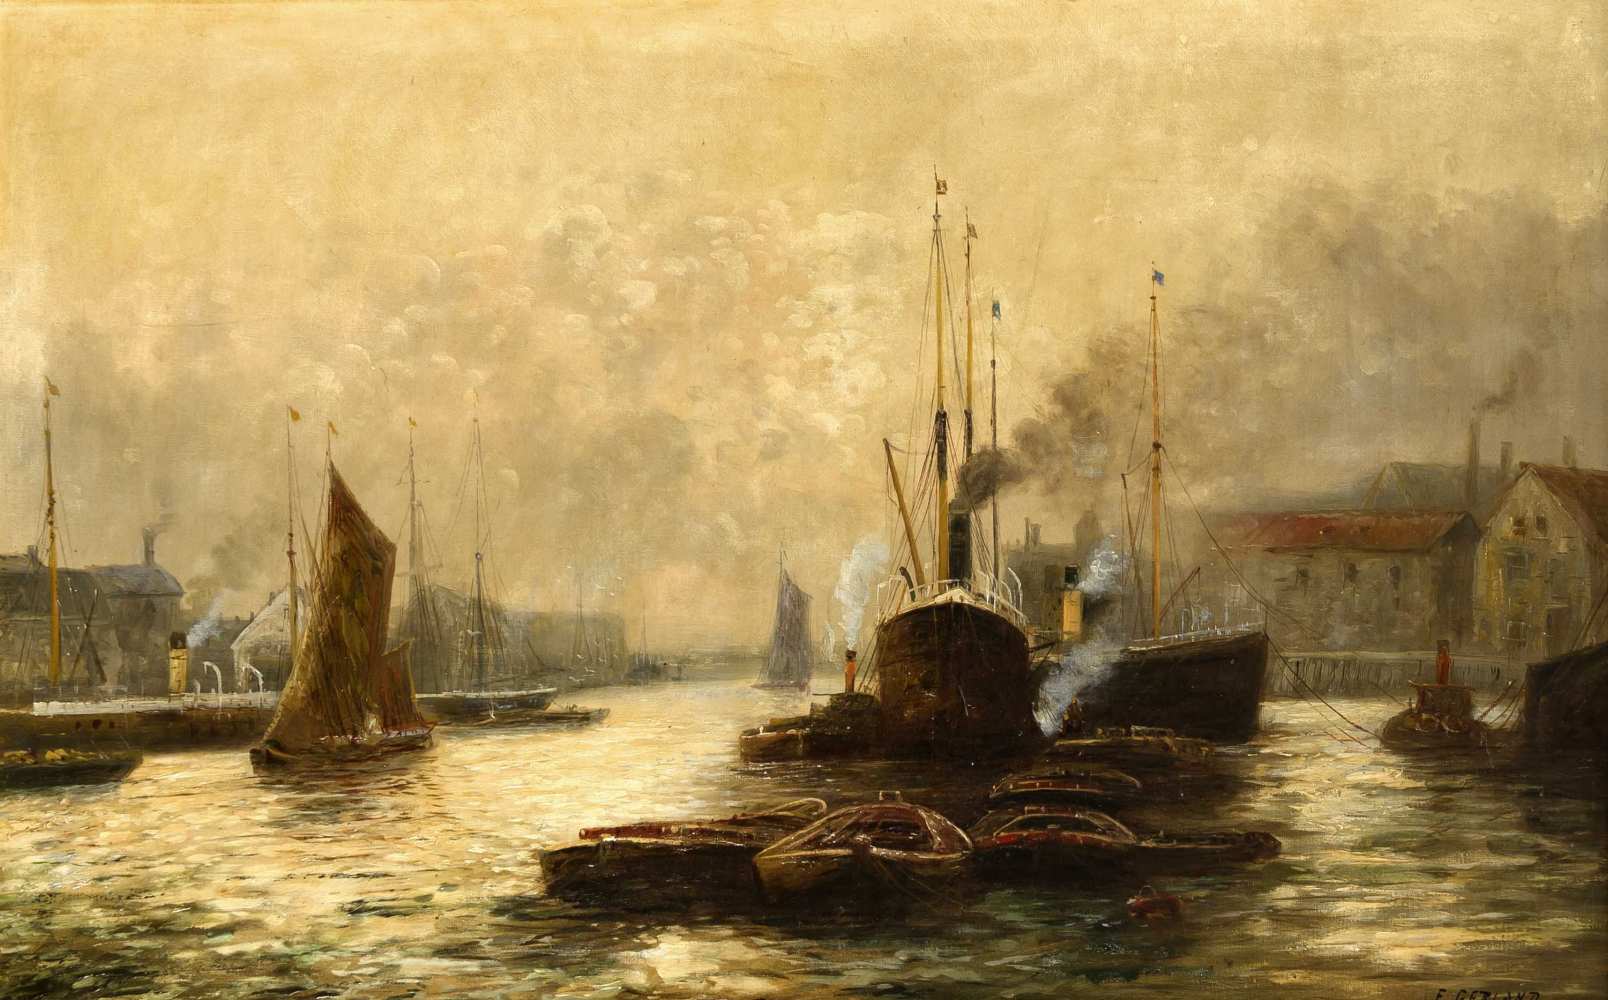 E. Gerland, Marinemaler um 1900, im Hafen von Stettin (?), Öl/Lwd., u. re. sign., 67 x 105cm, ger.